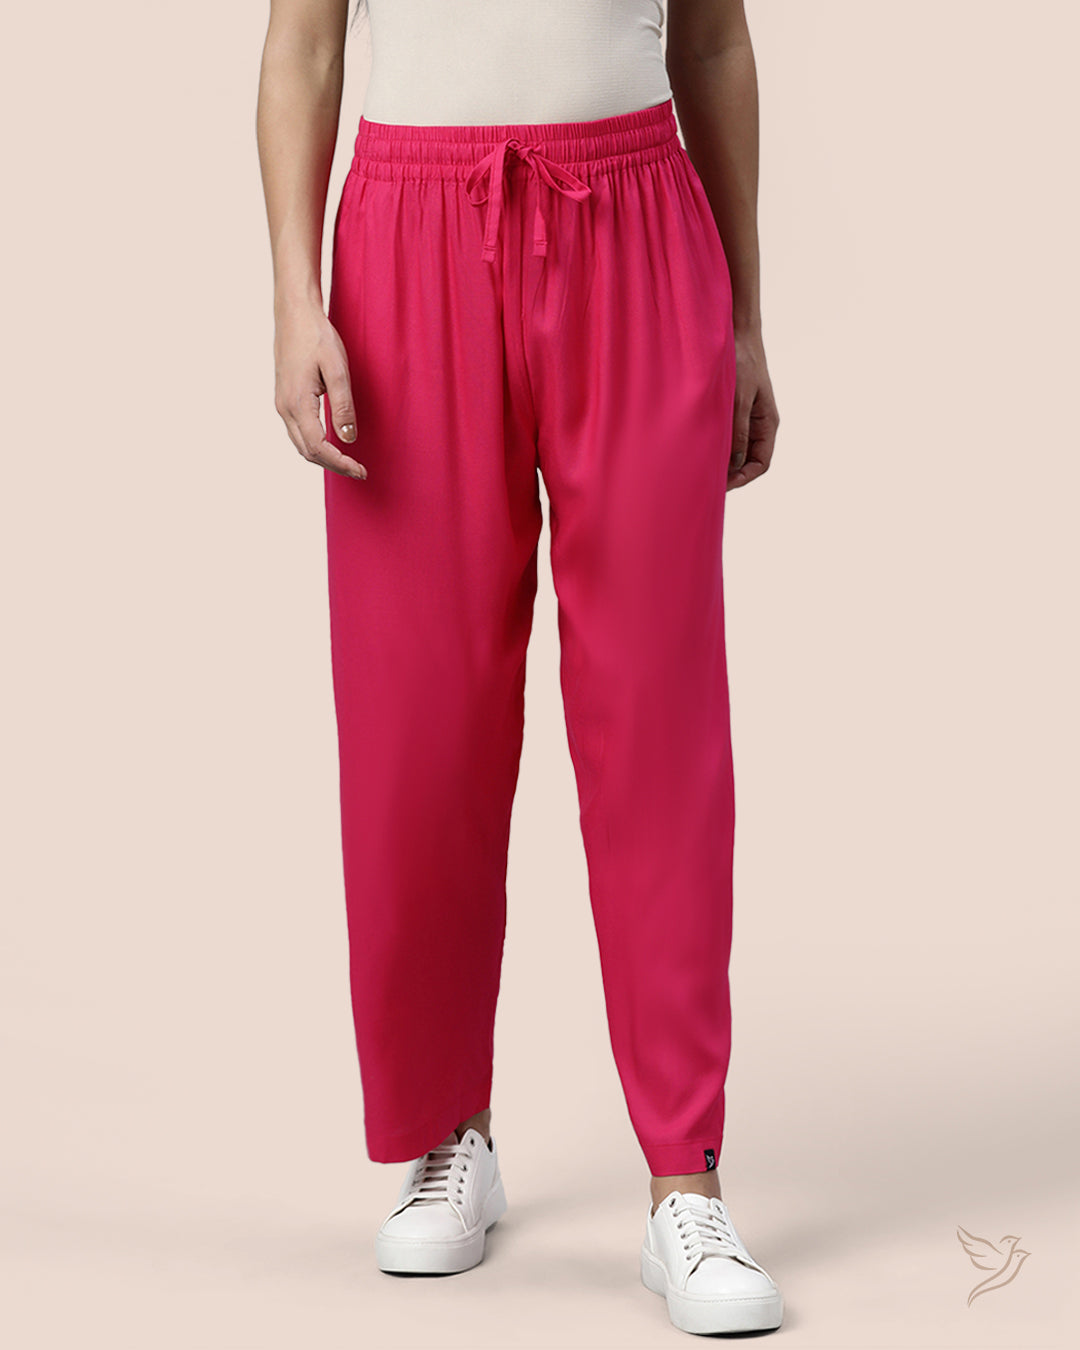 Cotton Blend Women's Kurti Pant Set Self Design Beautiful Kurta Pajama  Clothes | eBay